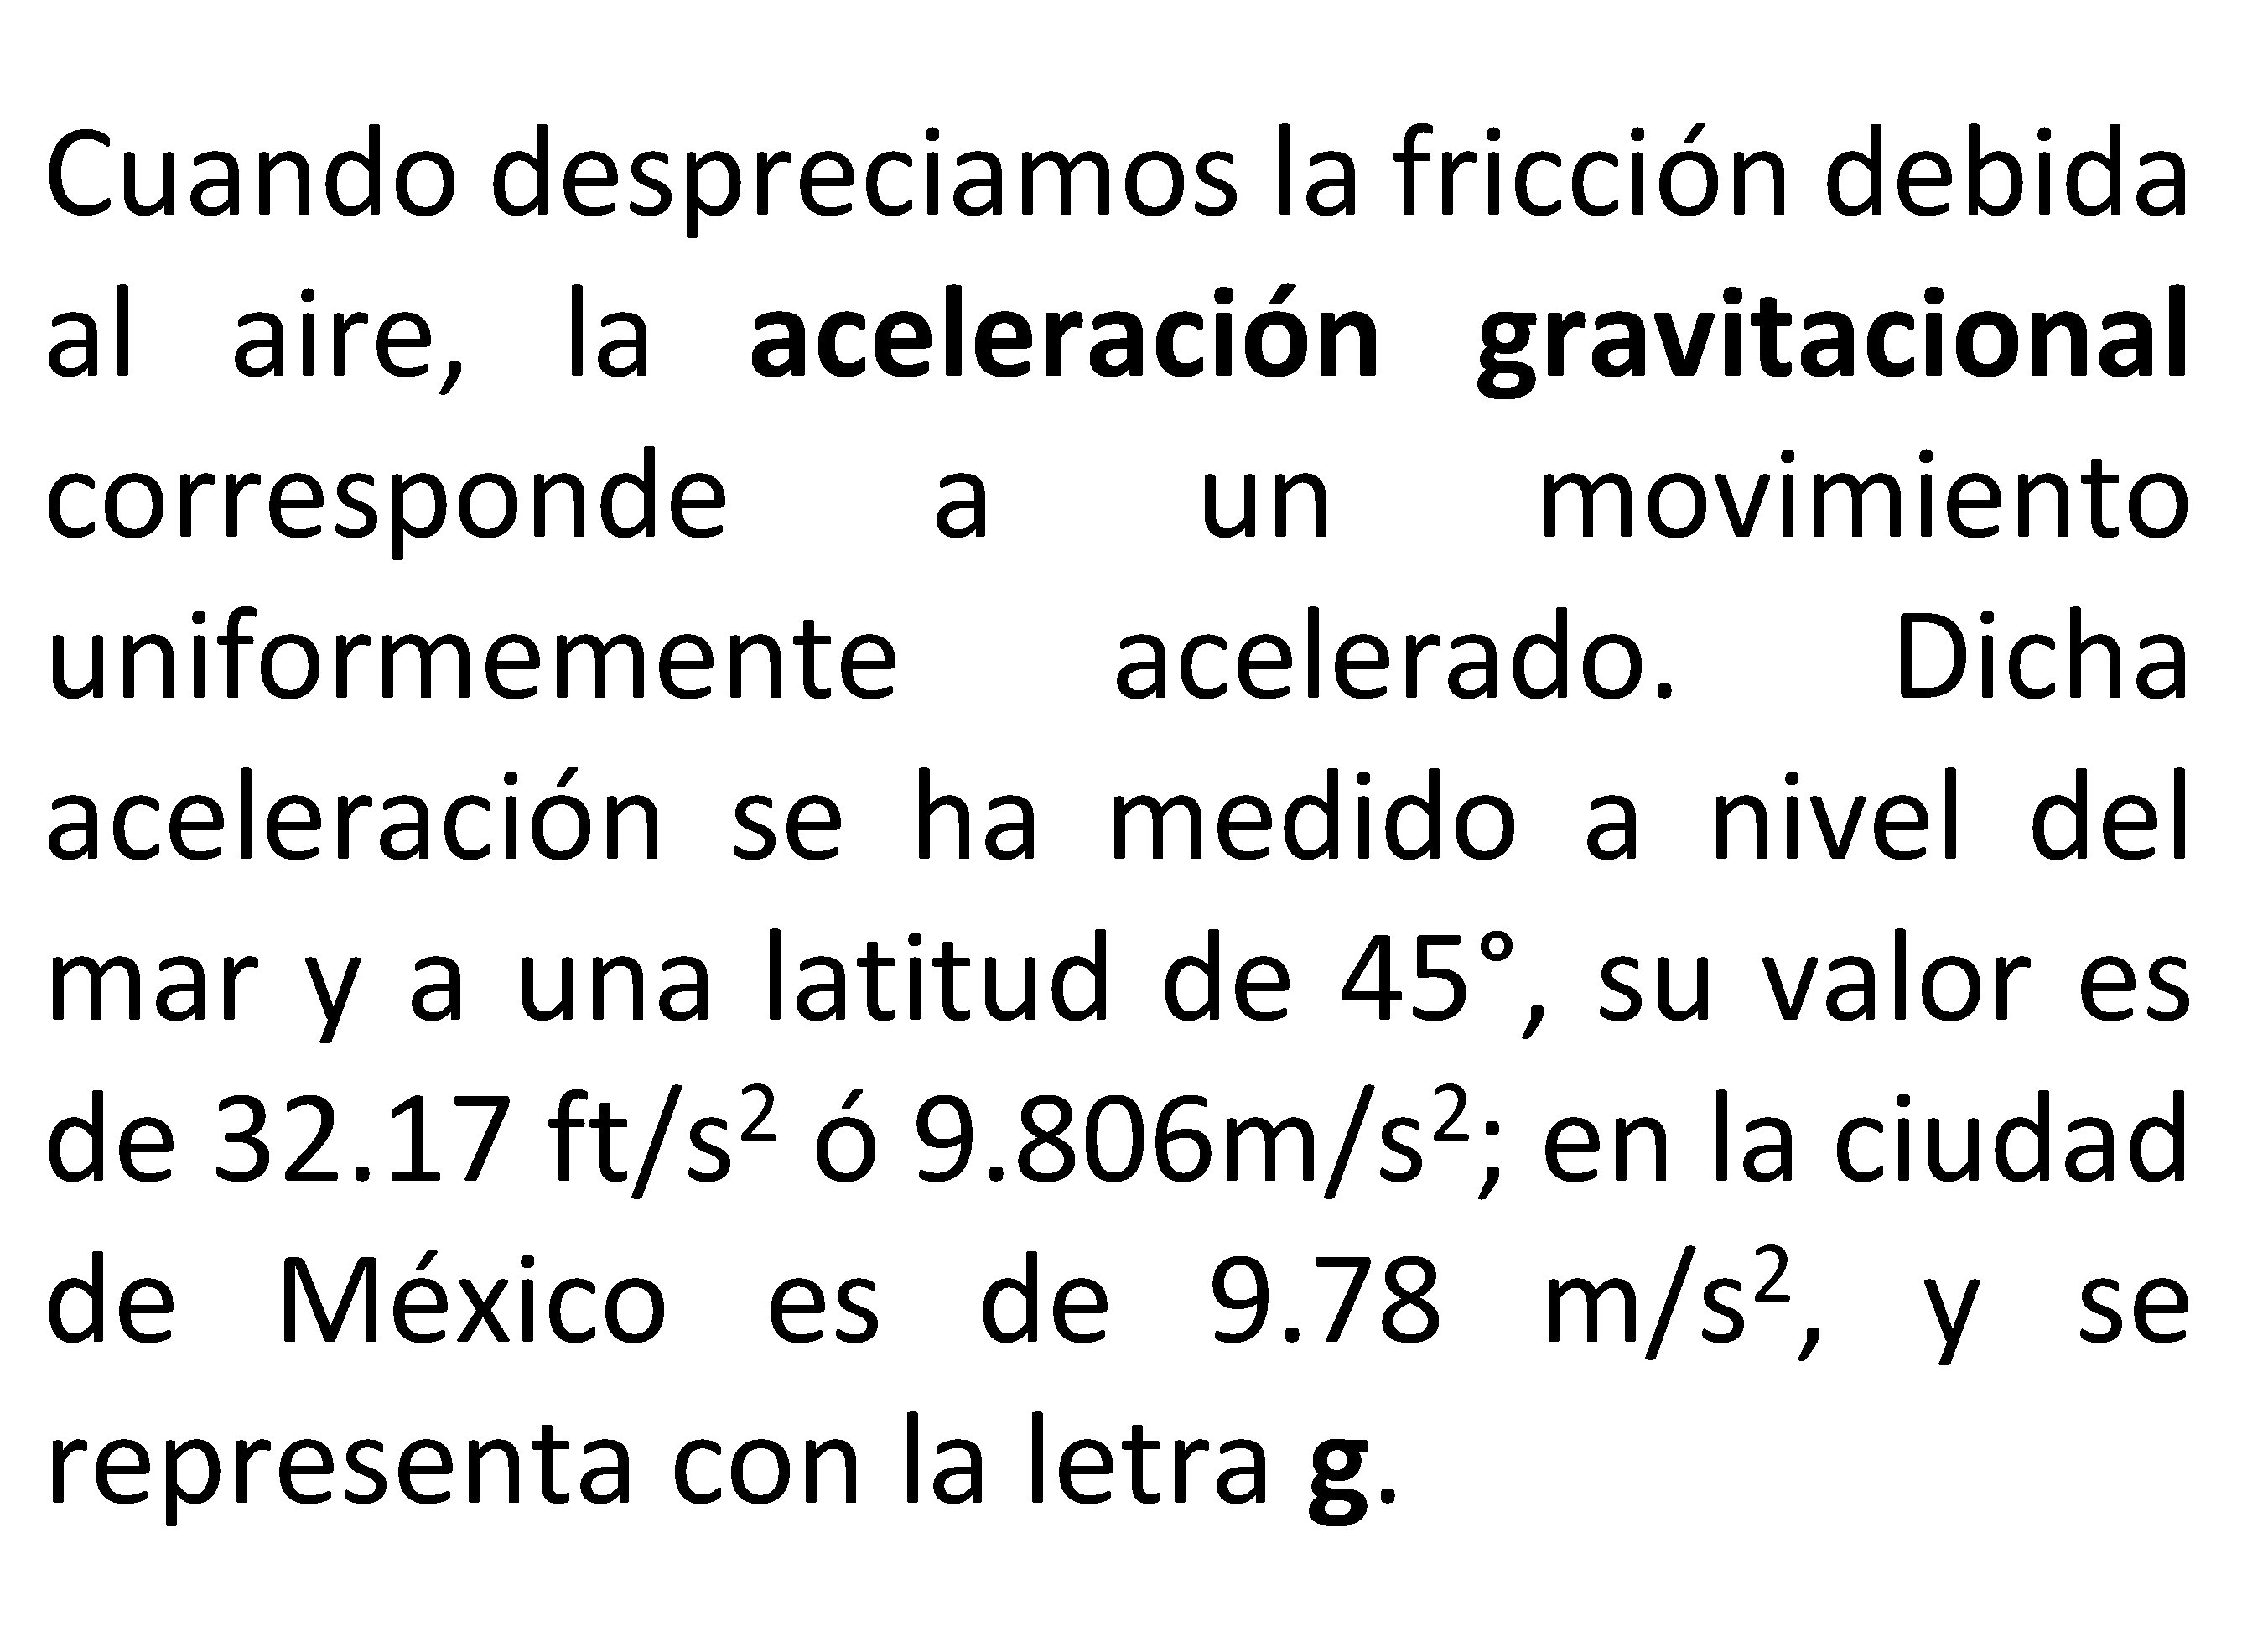 Cuando despreciamos la fricción debida al aire, la aceleración gravitacional corresponde a un movimiento